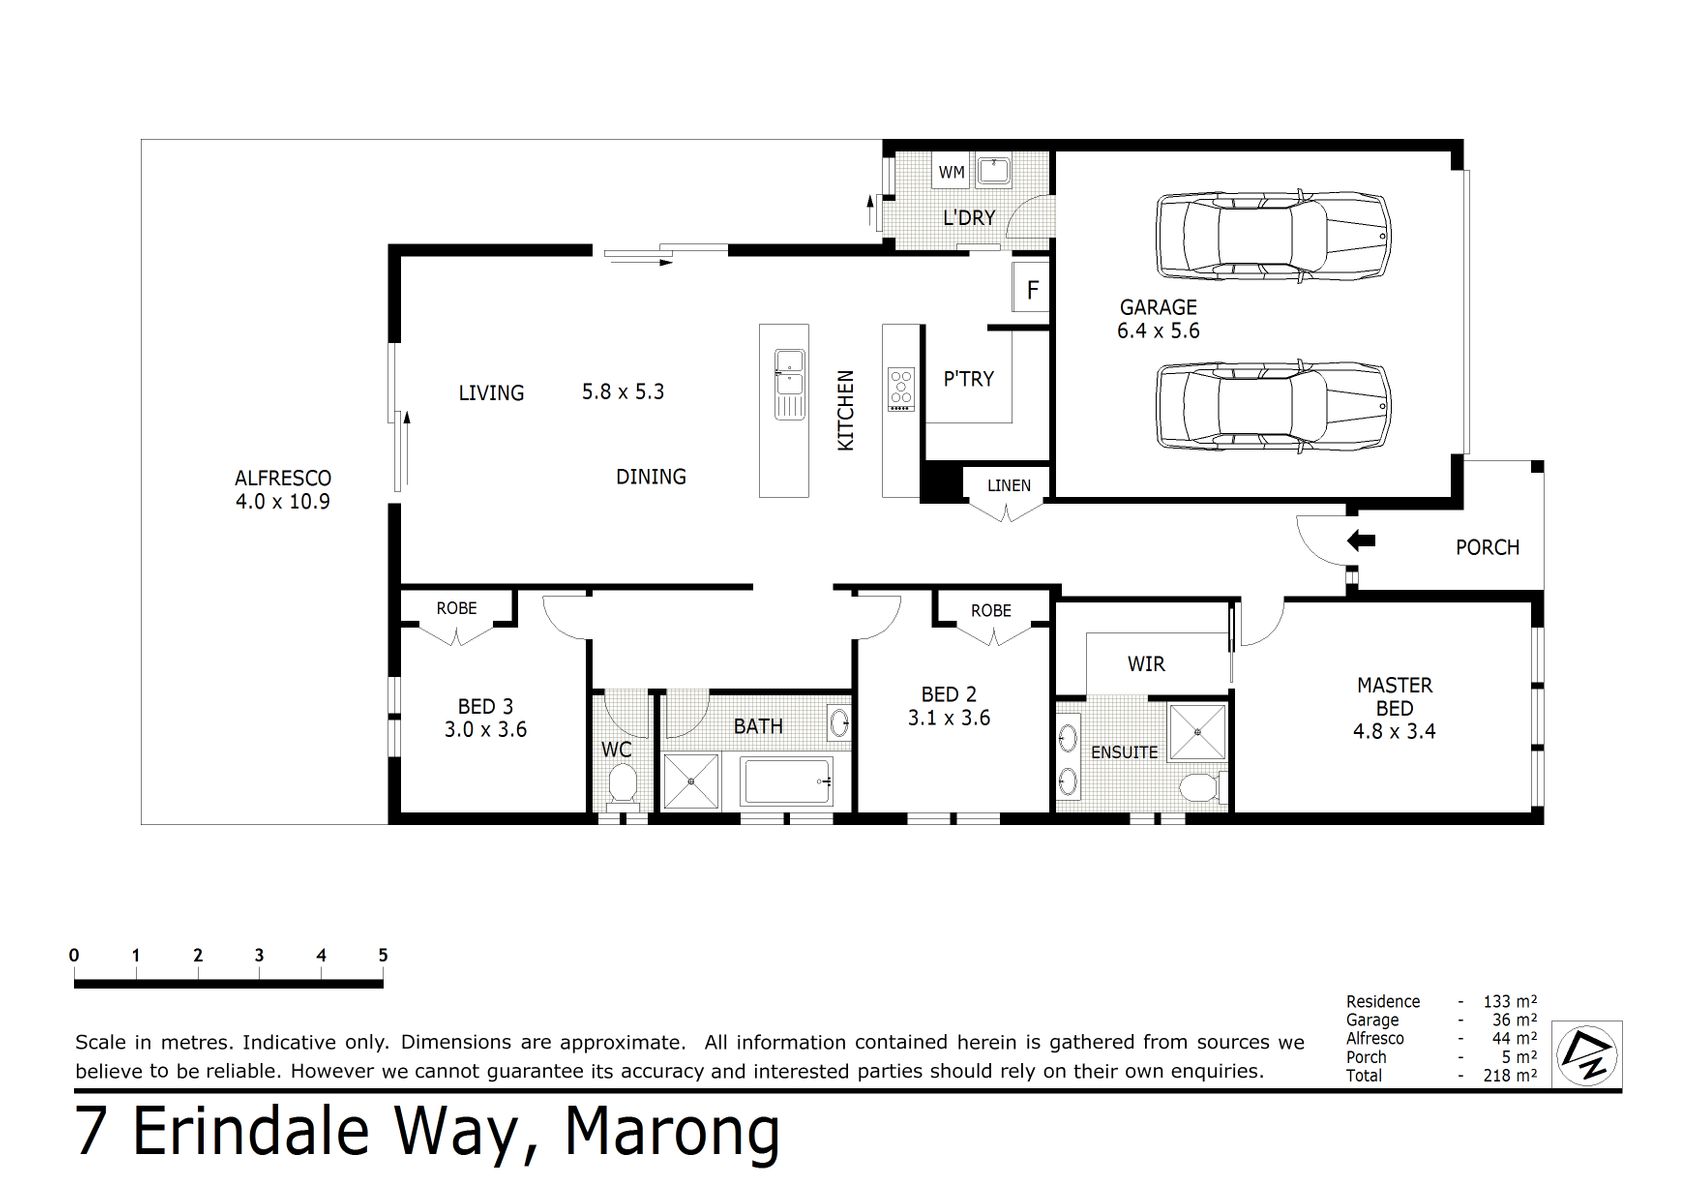 7 Erindale Way Marong (25 SEP 2020) 169sqm